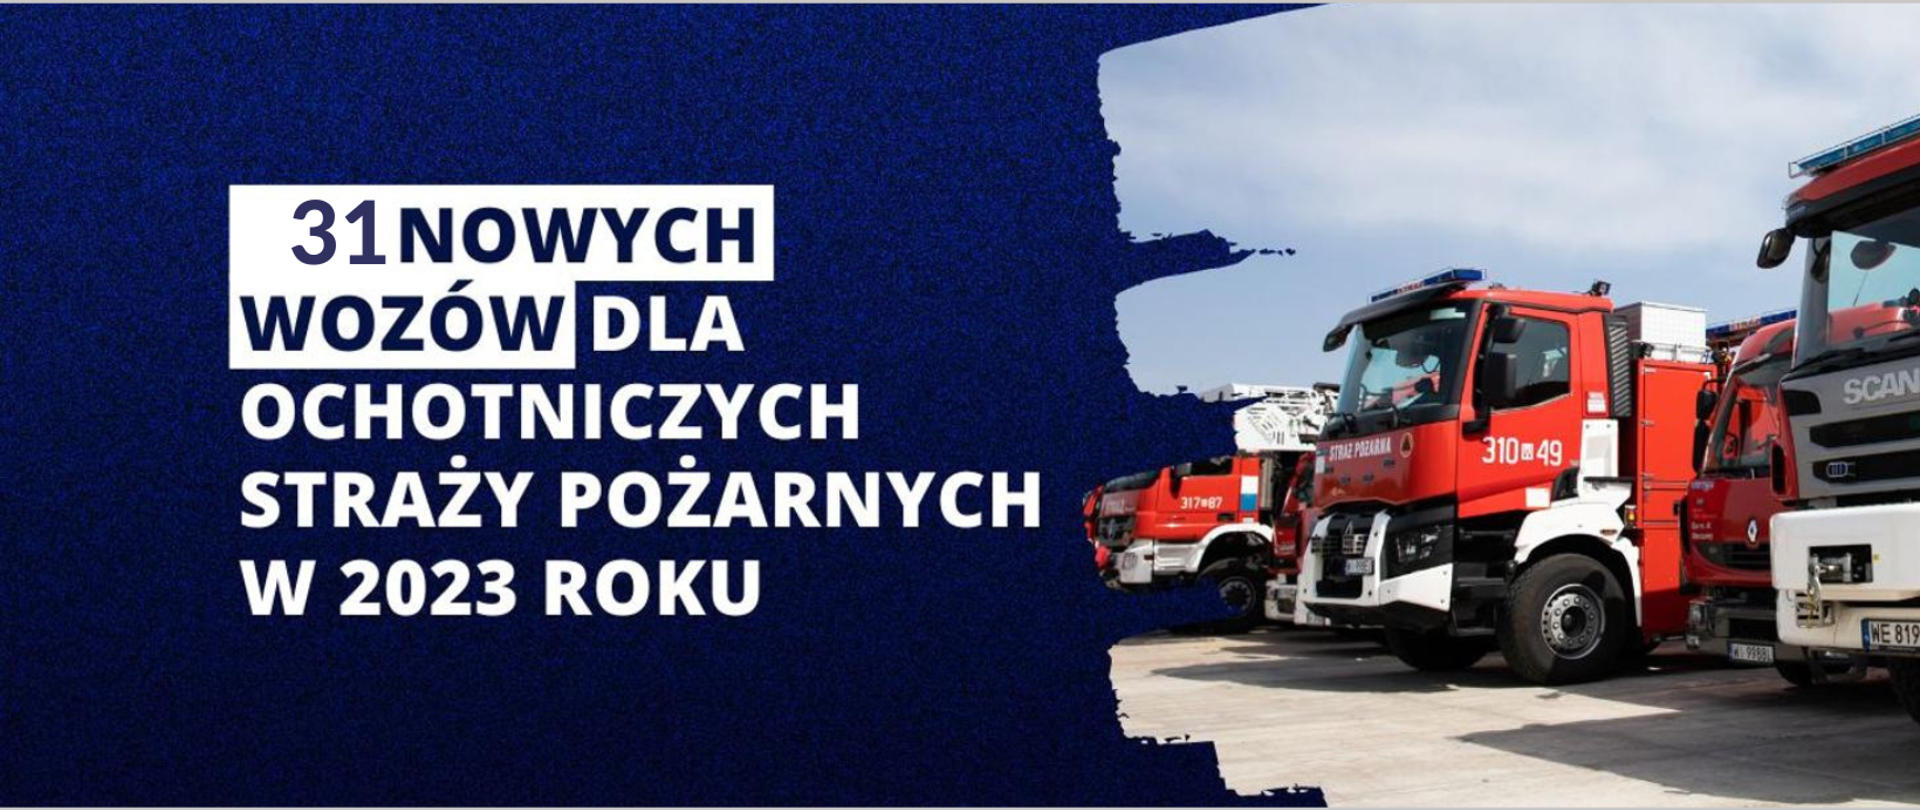 Rekordowa liczba wozów strażackich dla OSP na Warmii i Mazurach